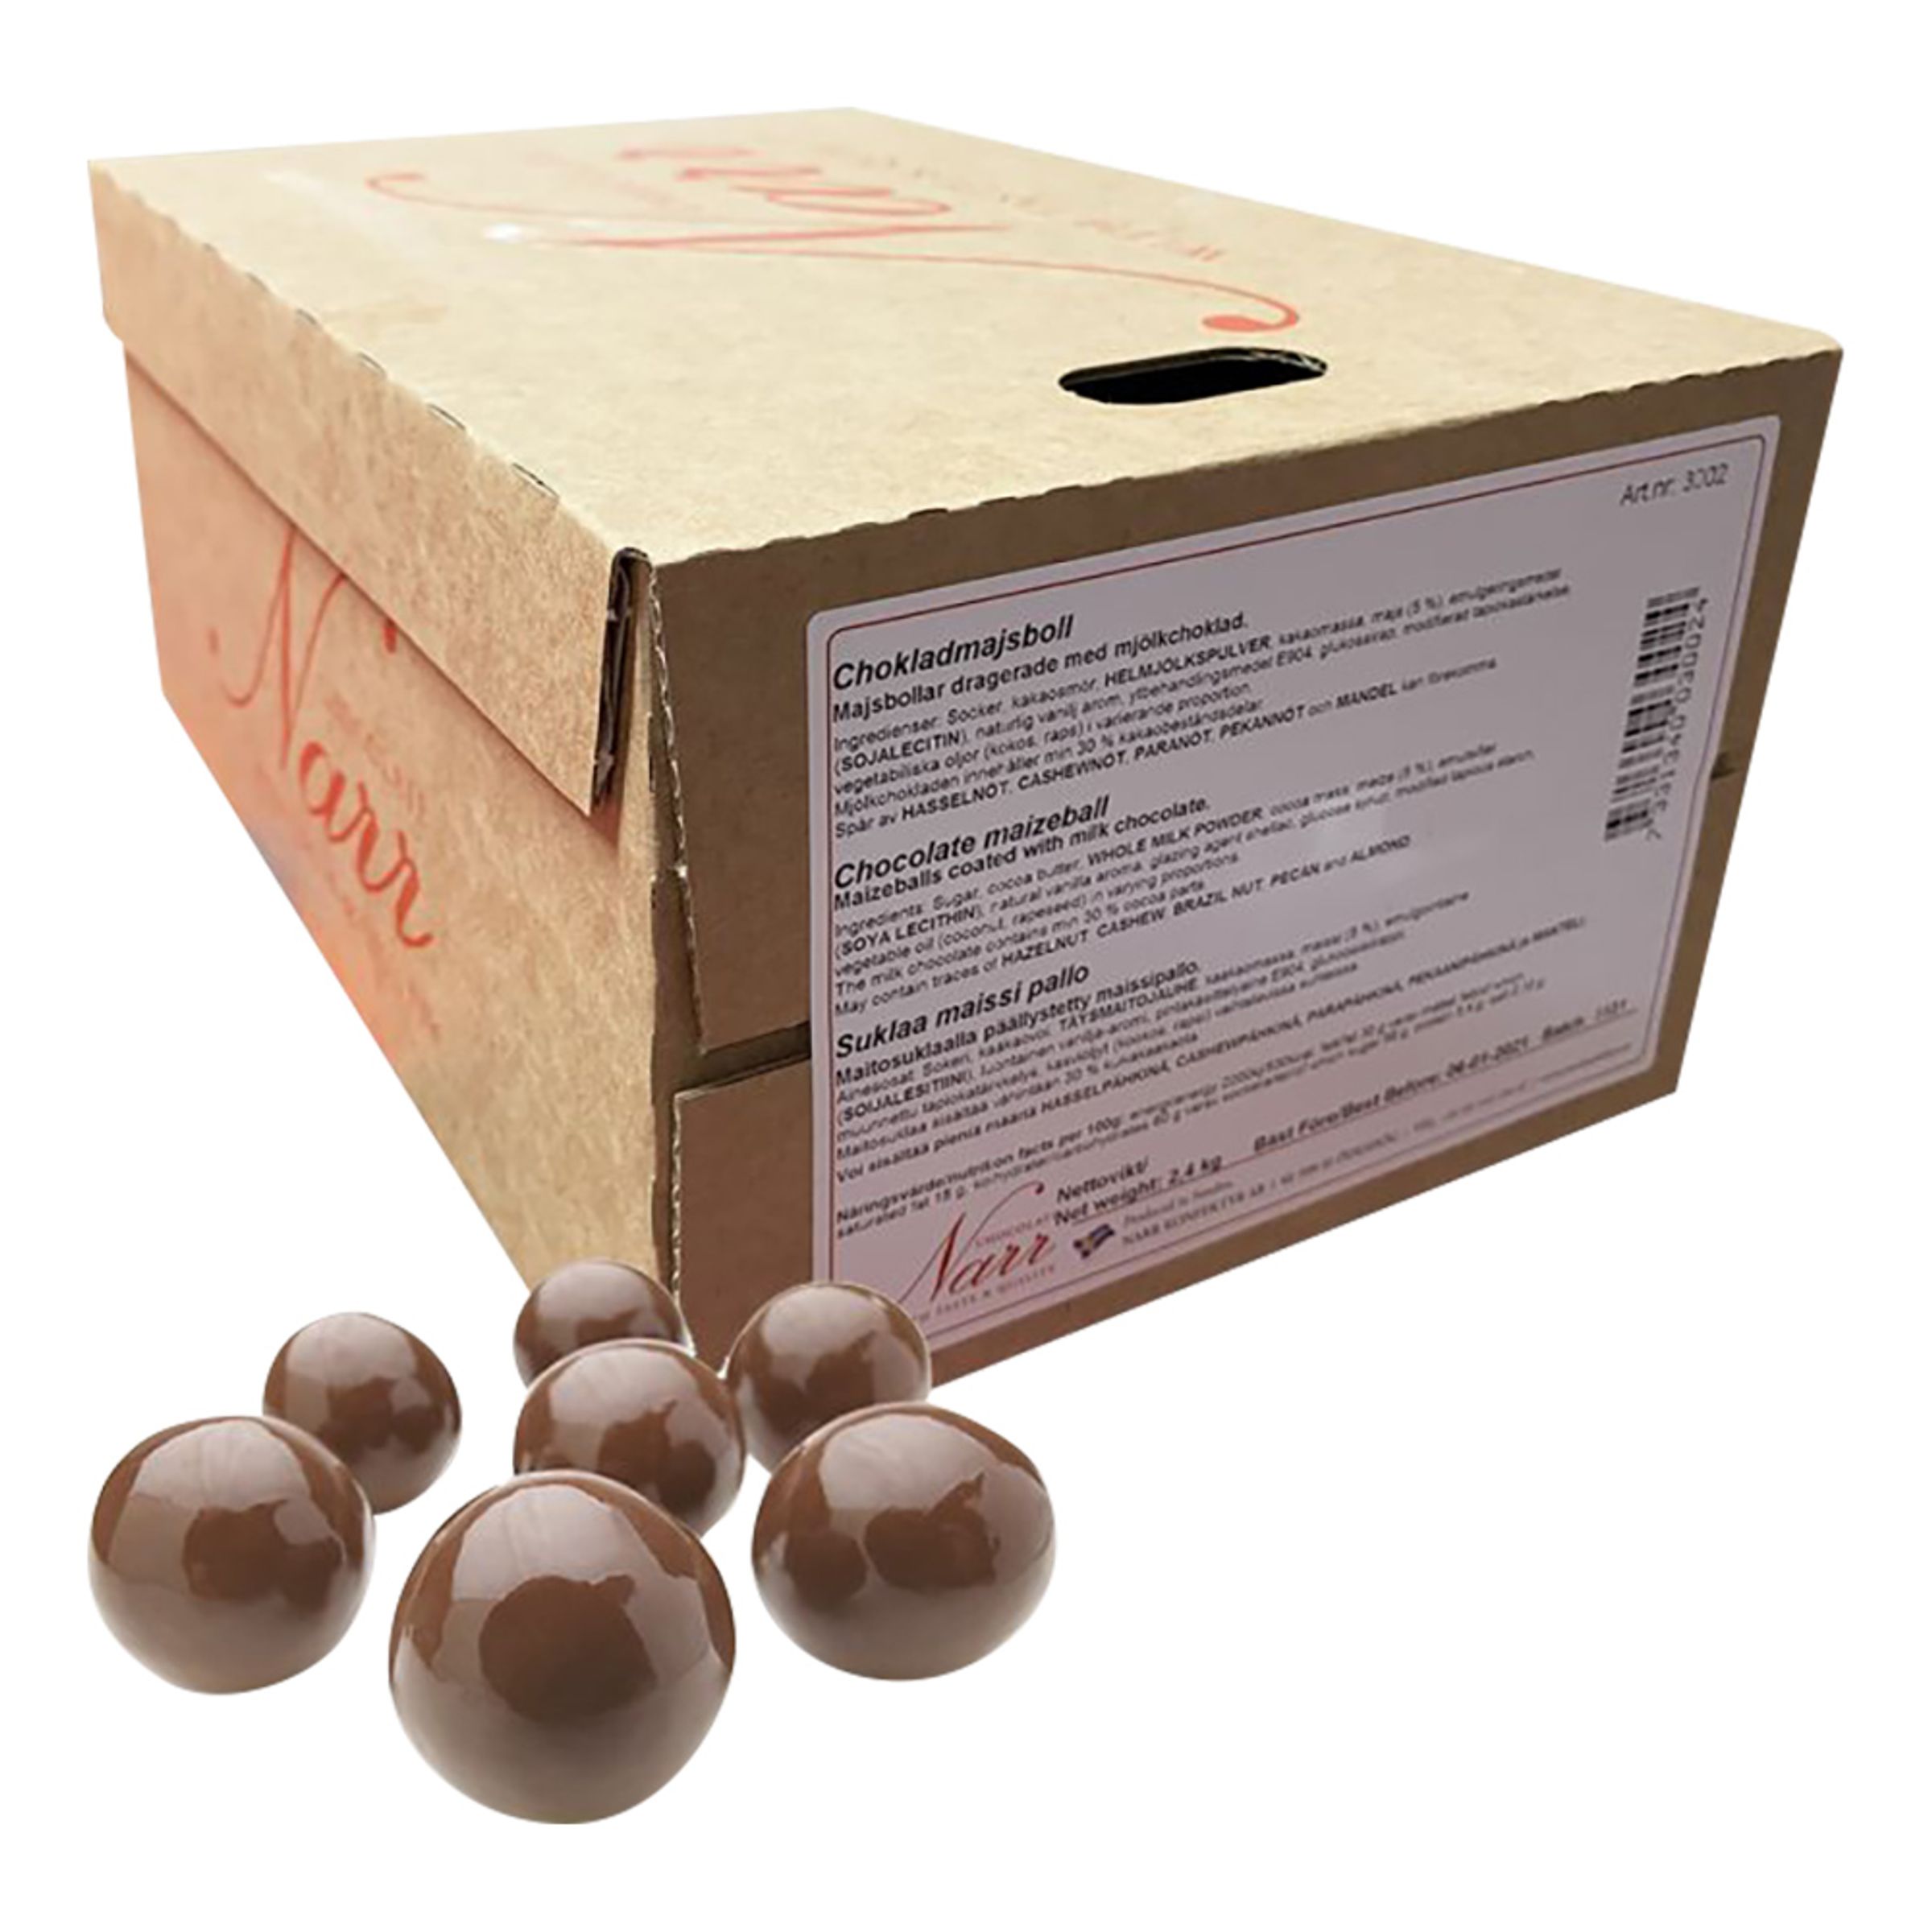 Läs mer om Majsbollar Choklad Storpack - 2,4 kg